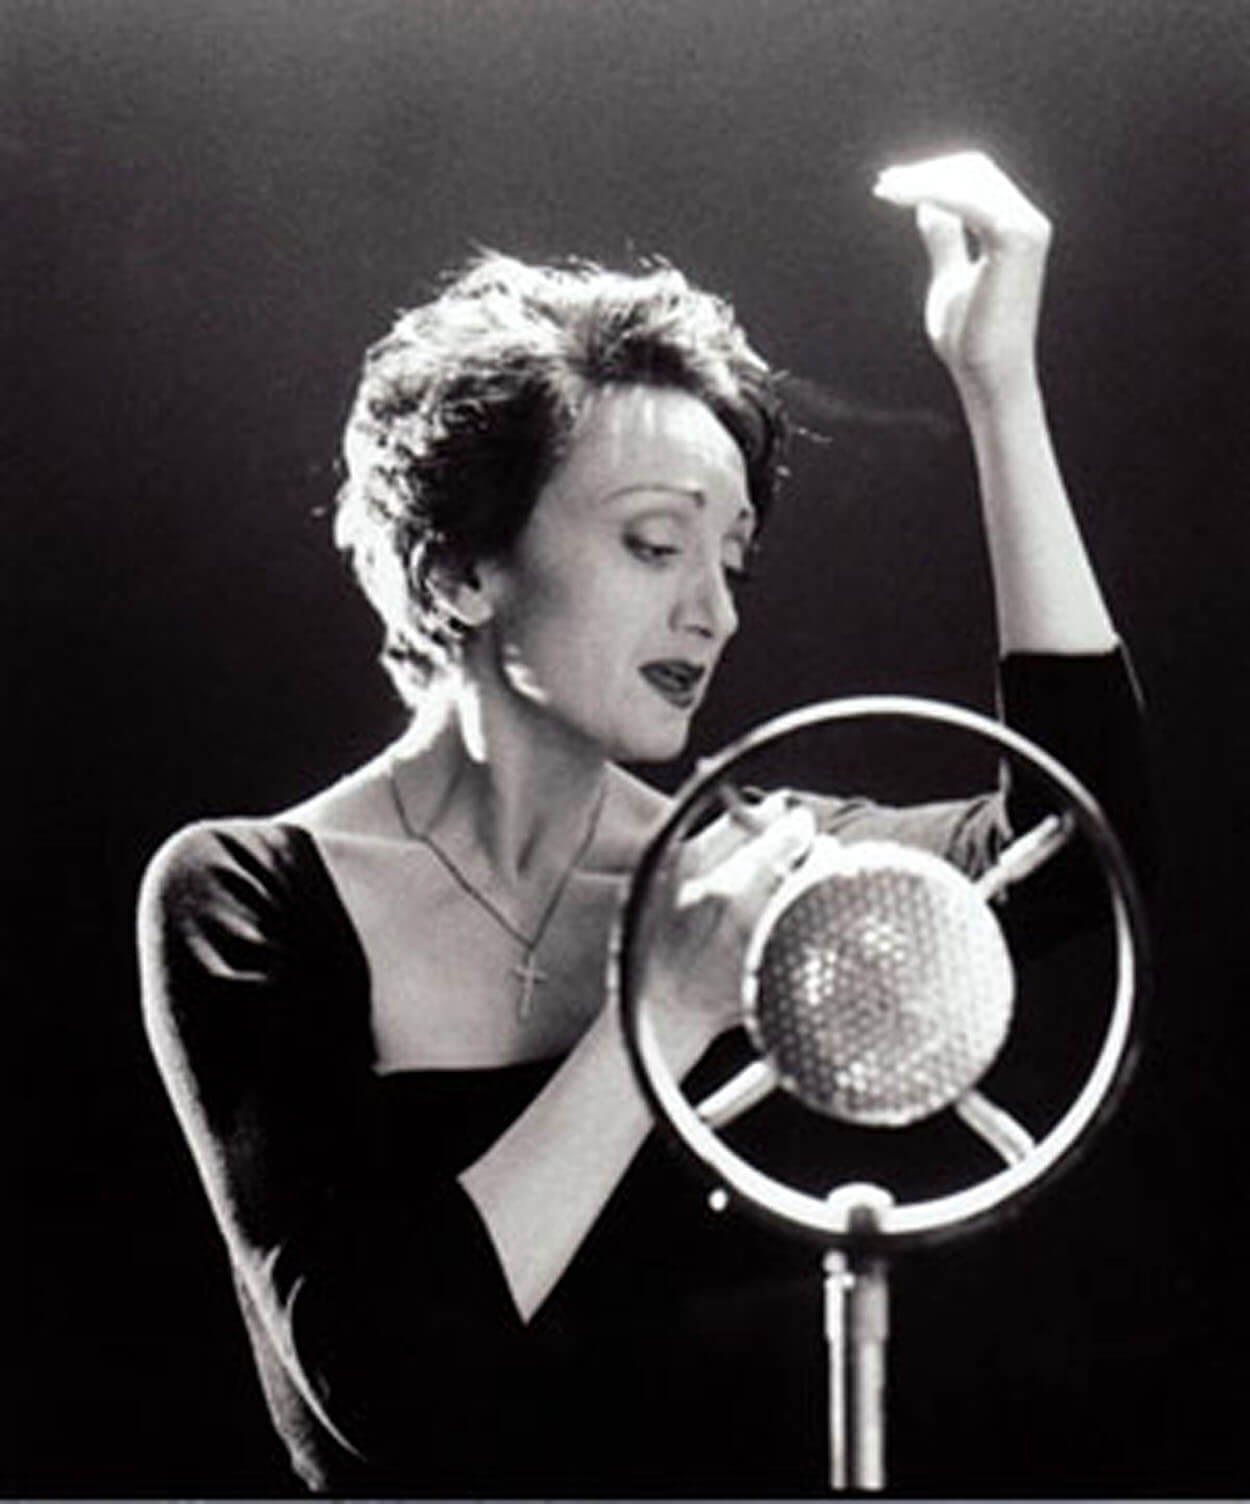 Music & Poetry - "Non, je ne regrette rien", di Edith Piaf